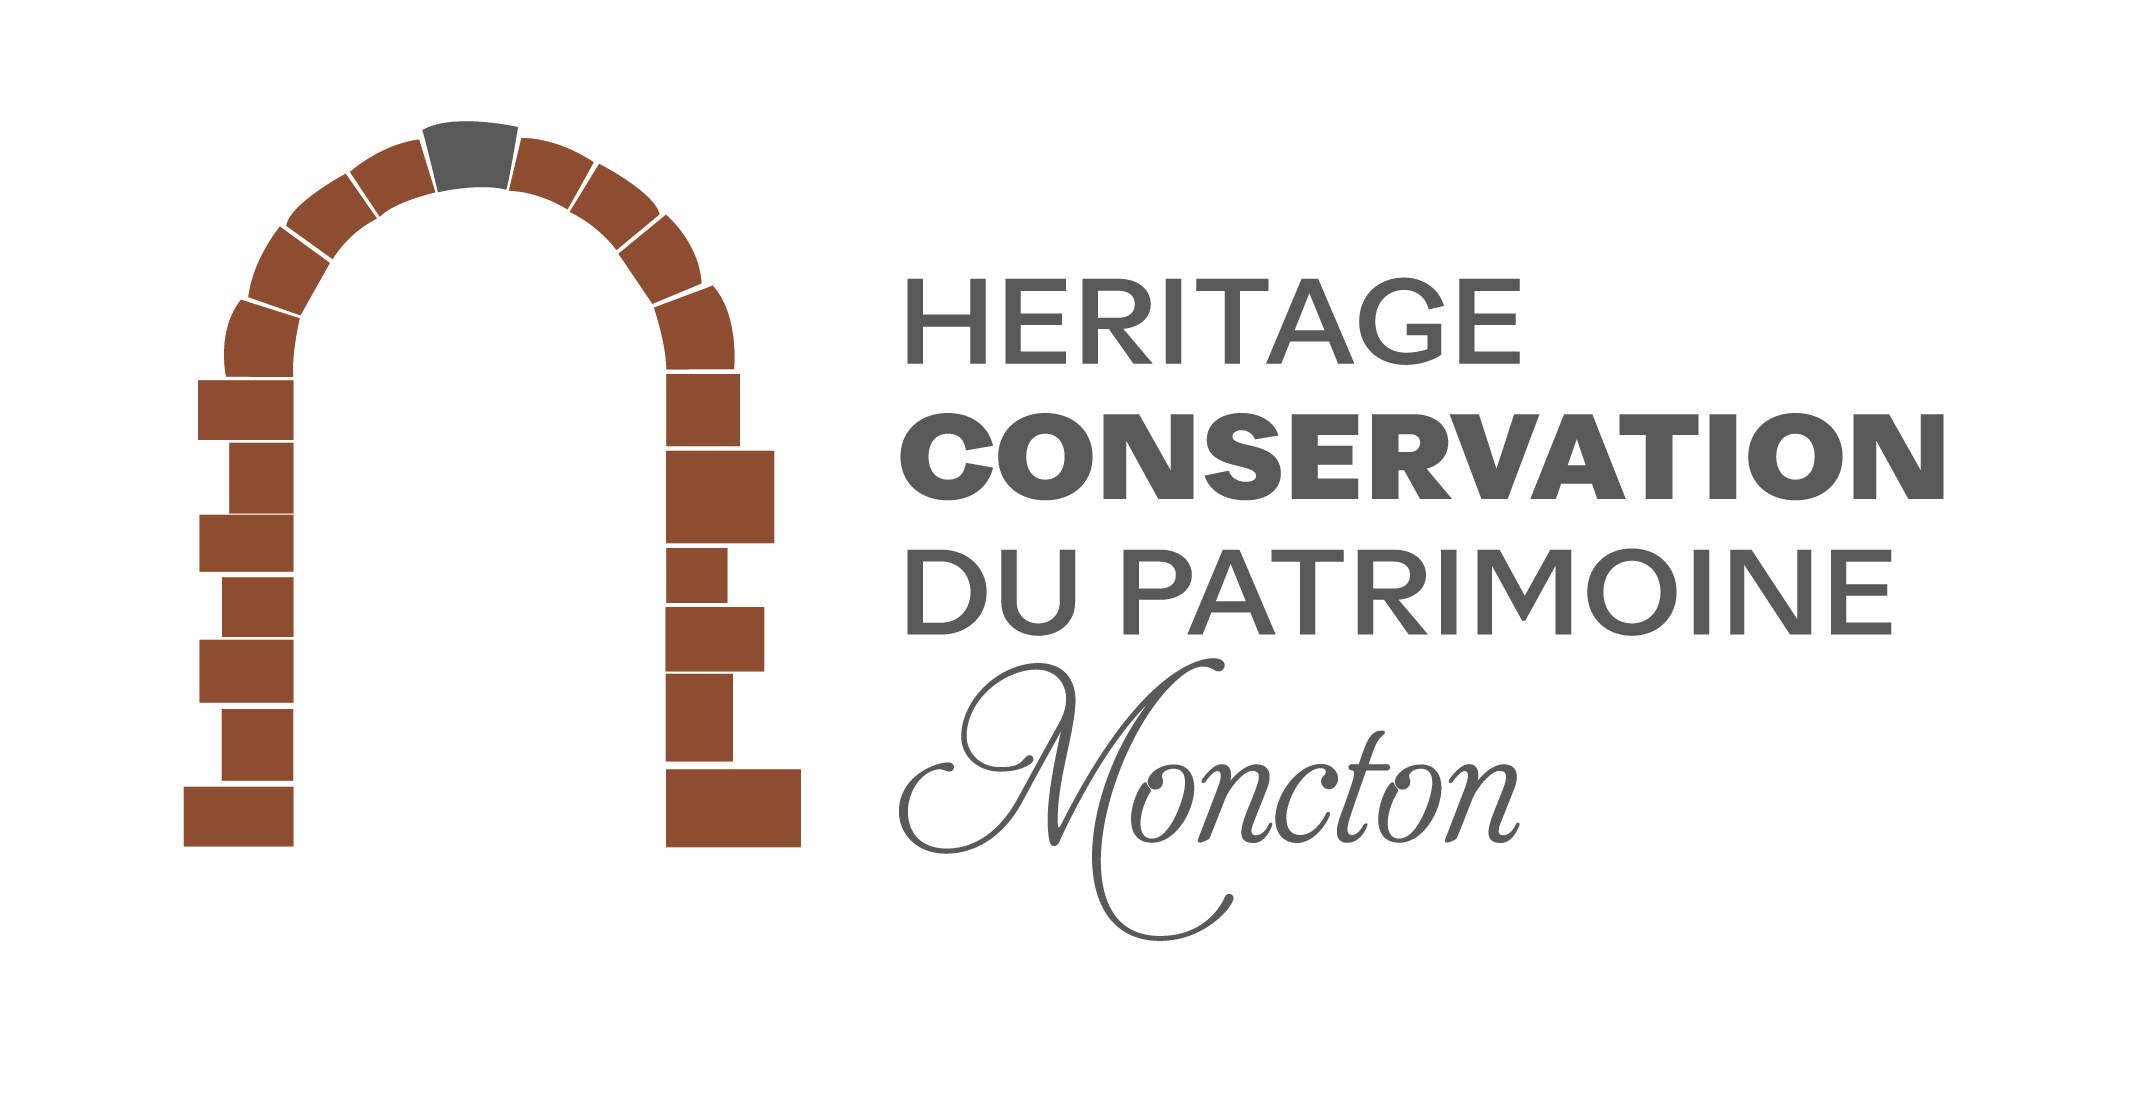 Heritage Preservation Board